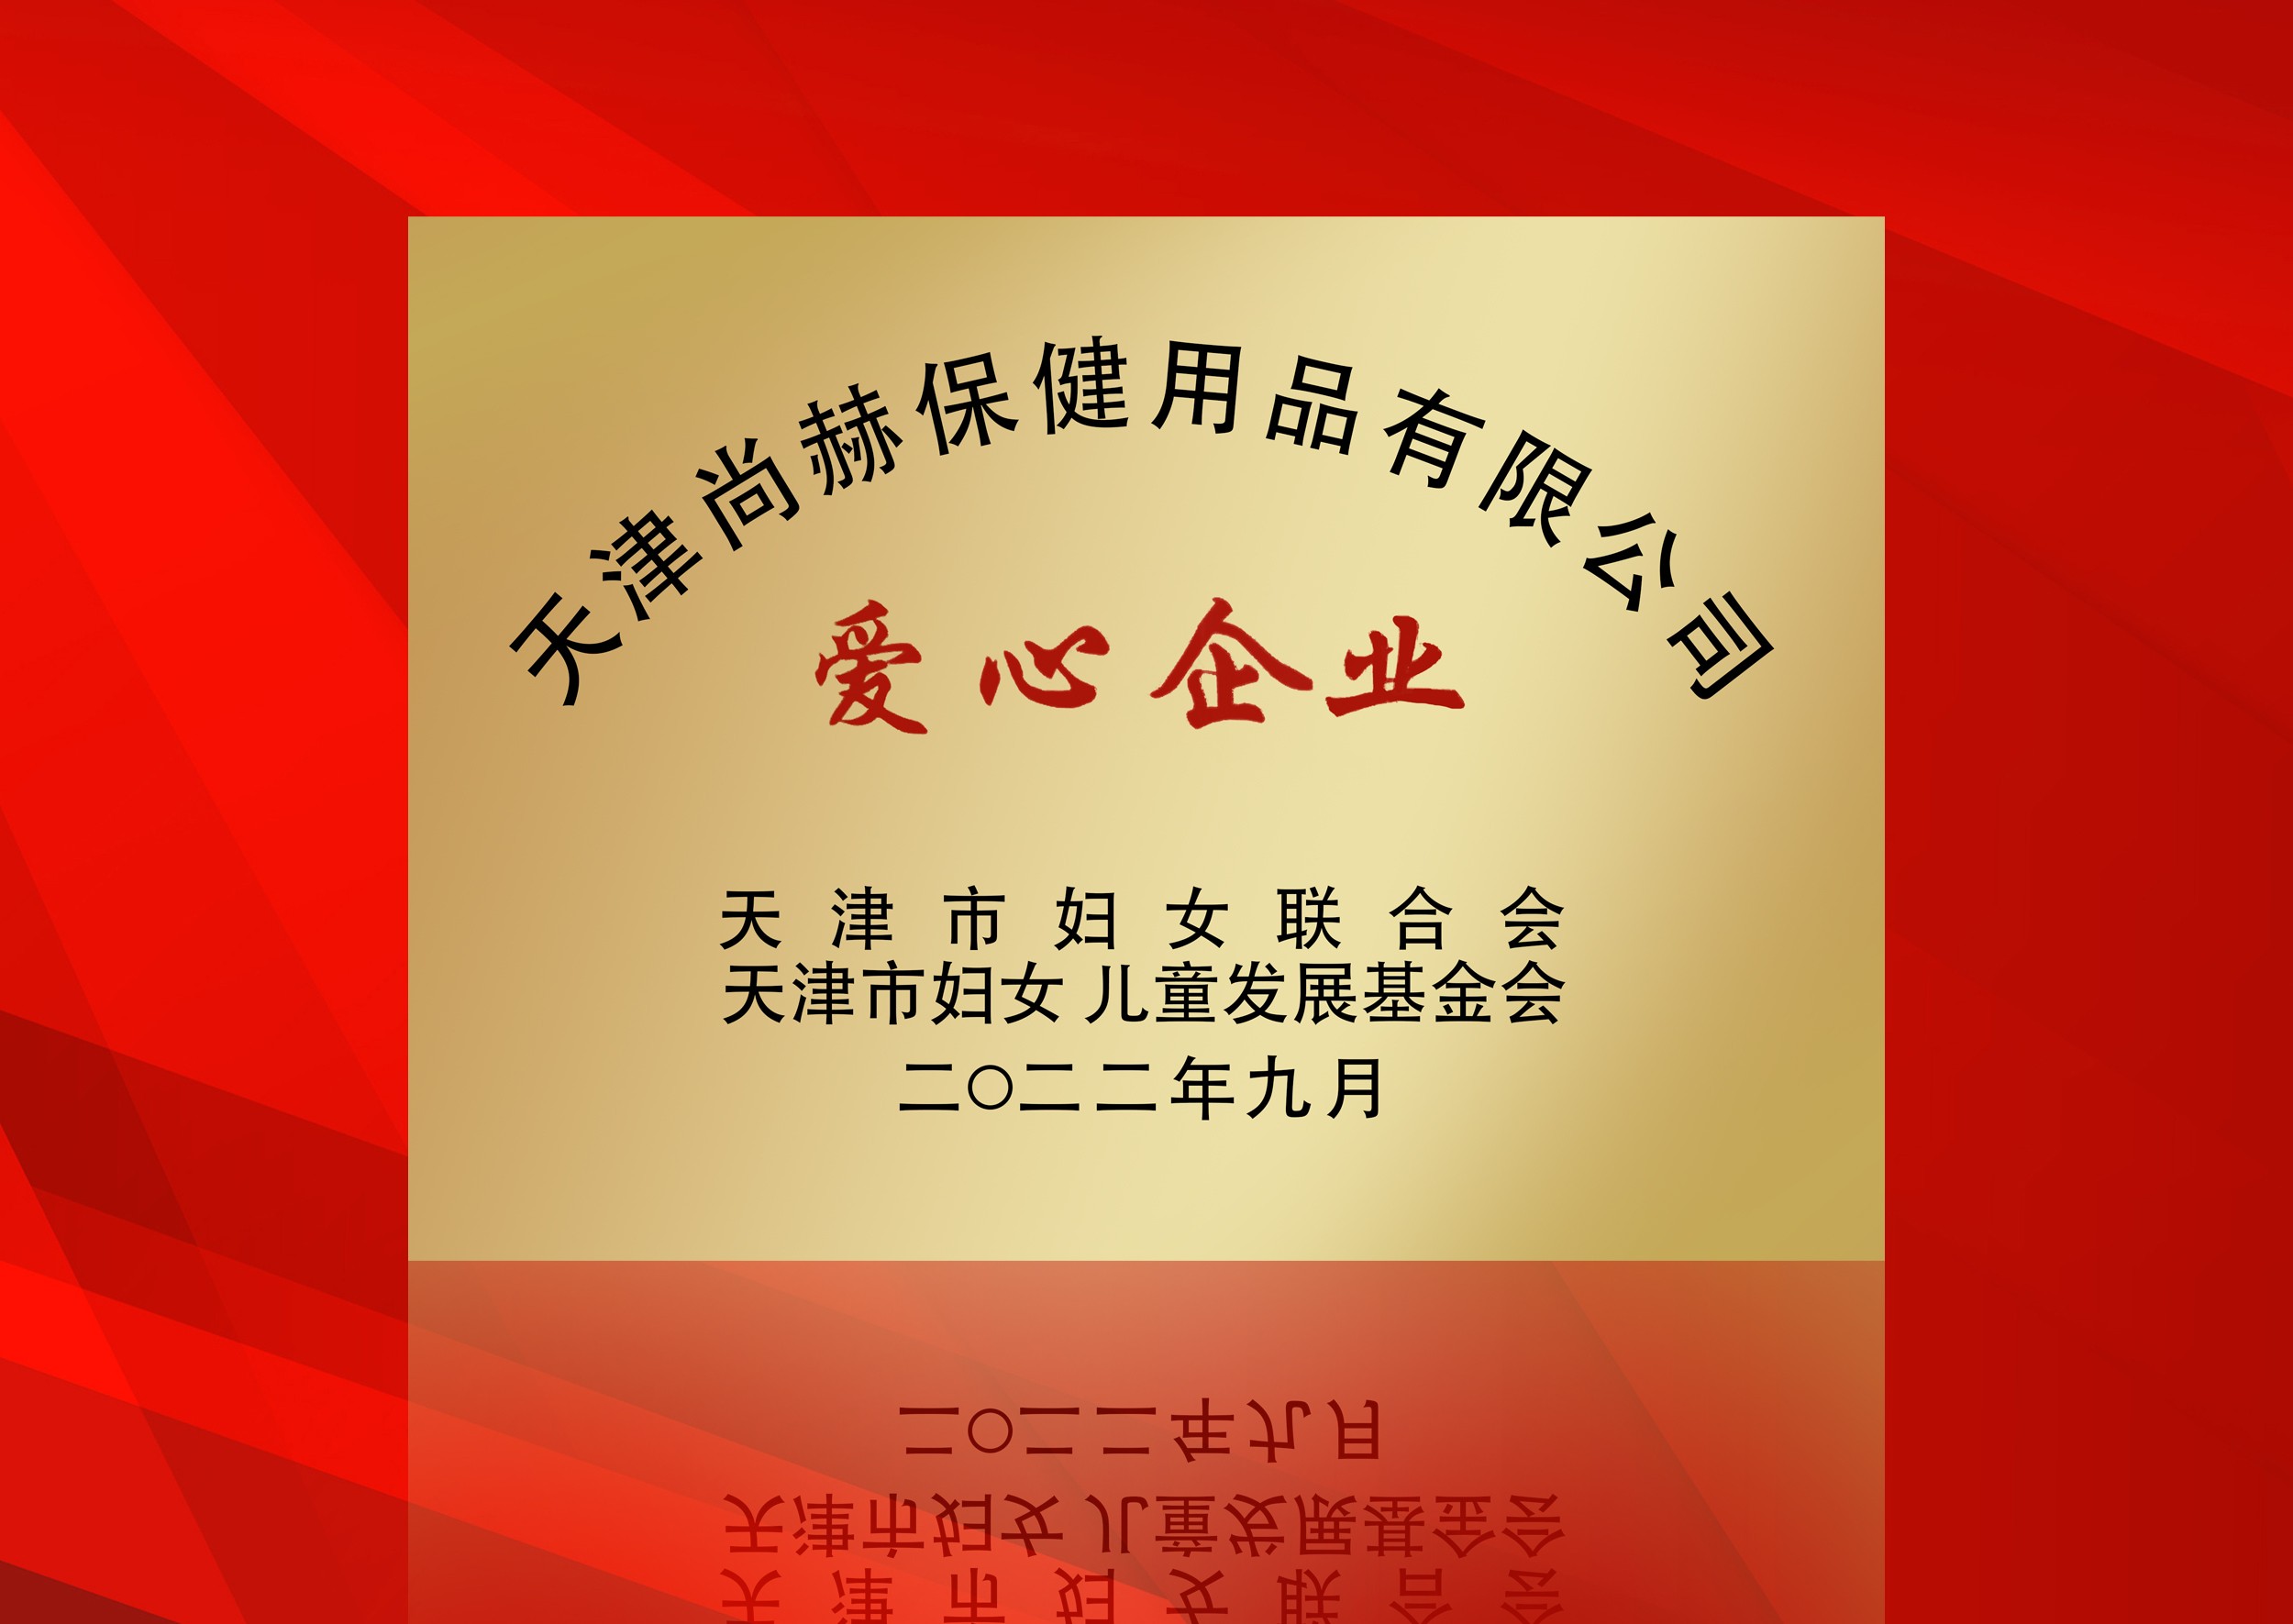 2022年9月-正规的十大网投实体平台(中国)有限公司公司荣获-天津市妇女联合会-“爱心企业”称号